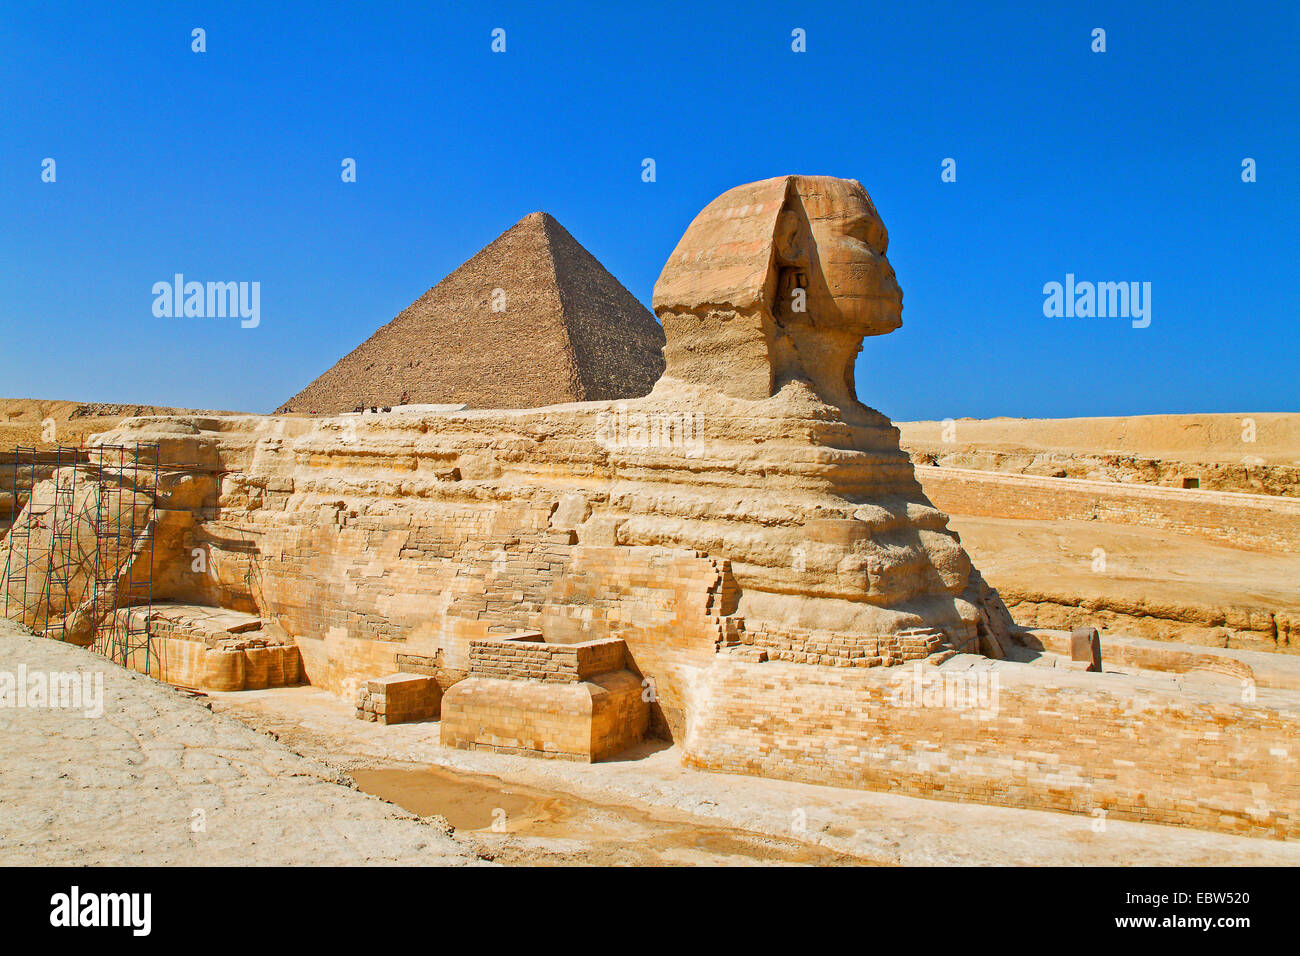 Gran Esfinge de Giza con la pirámide de Khafre, Egipto, Gizeh Foto de stock